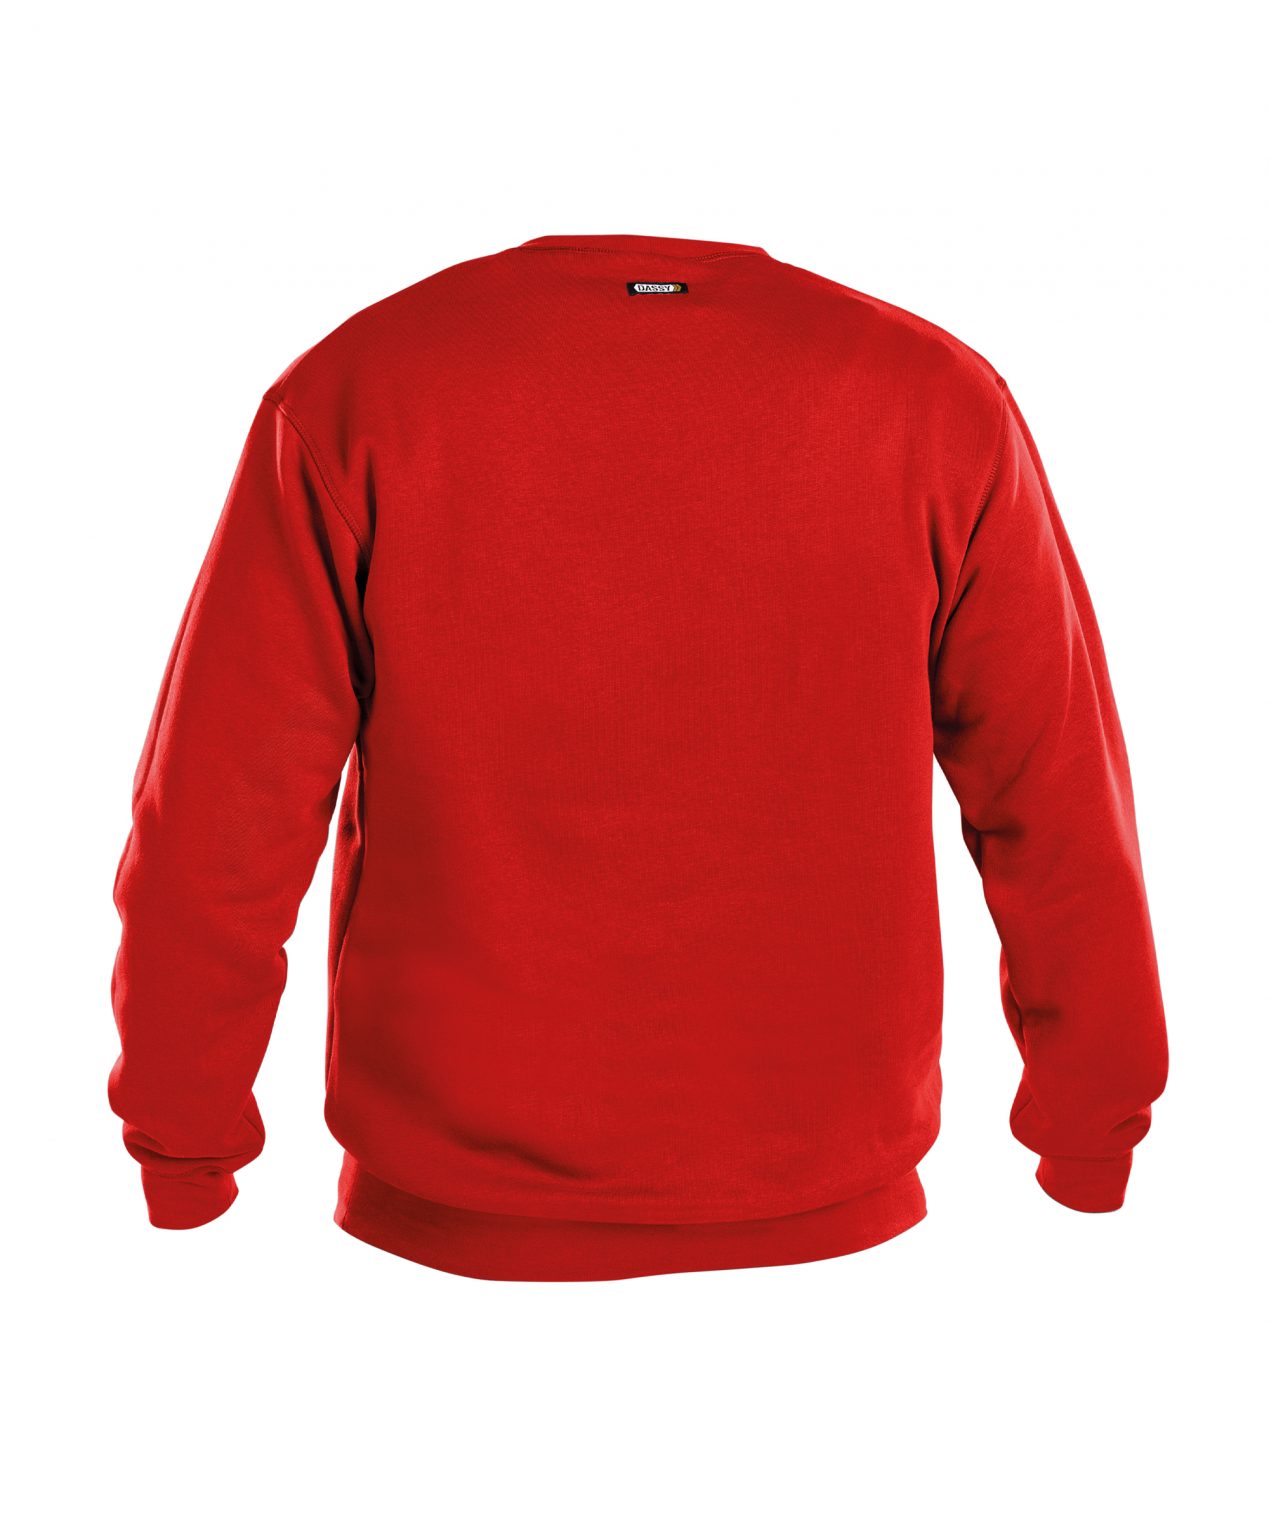 lionel sweatshirt red back